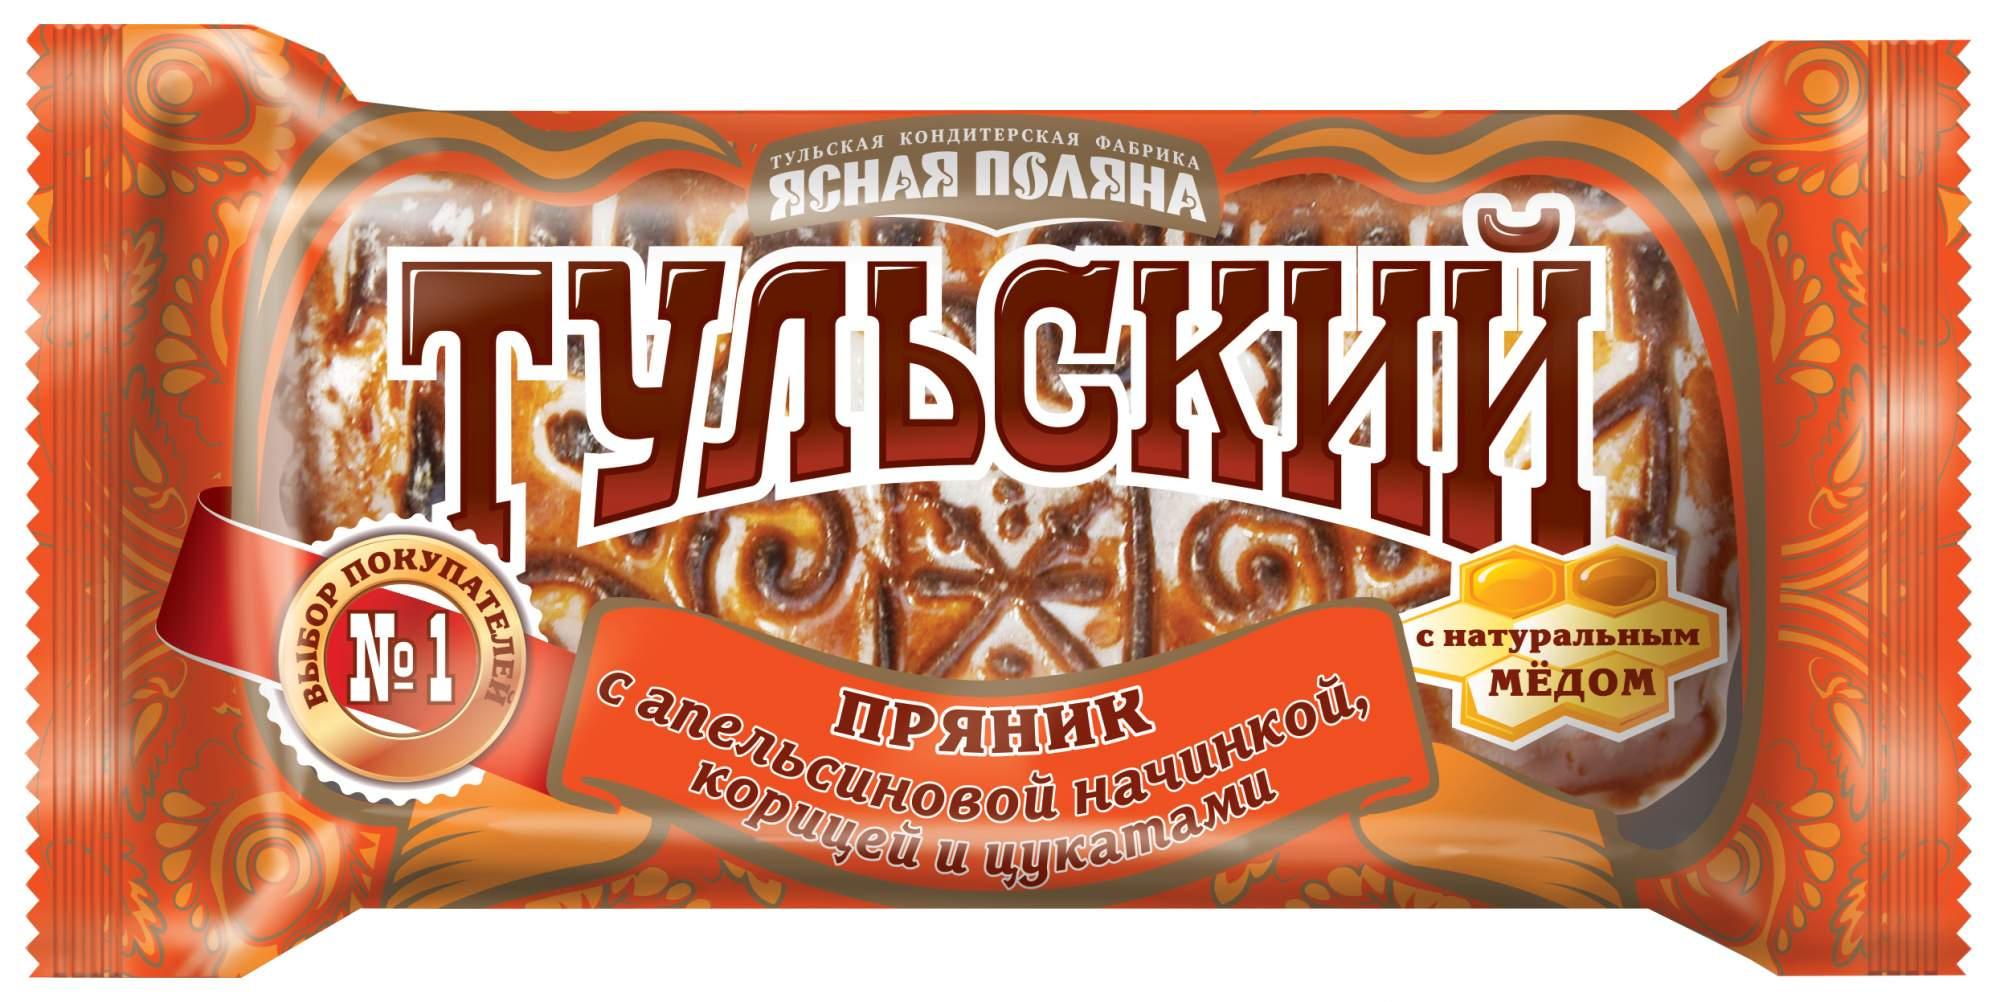 Пряник Тульский апельсин-корица 140г - купить в Москве в интернет-магазине  Близнецы